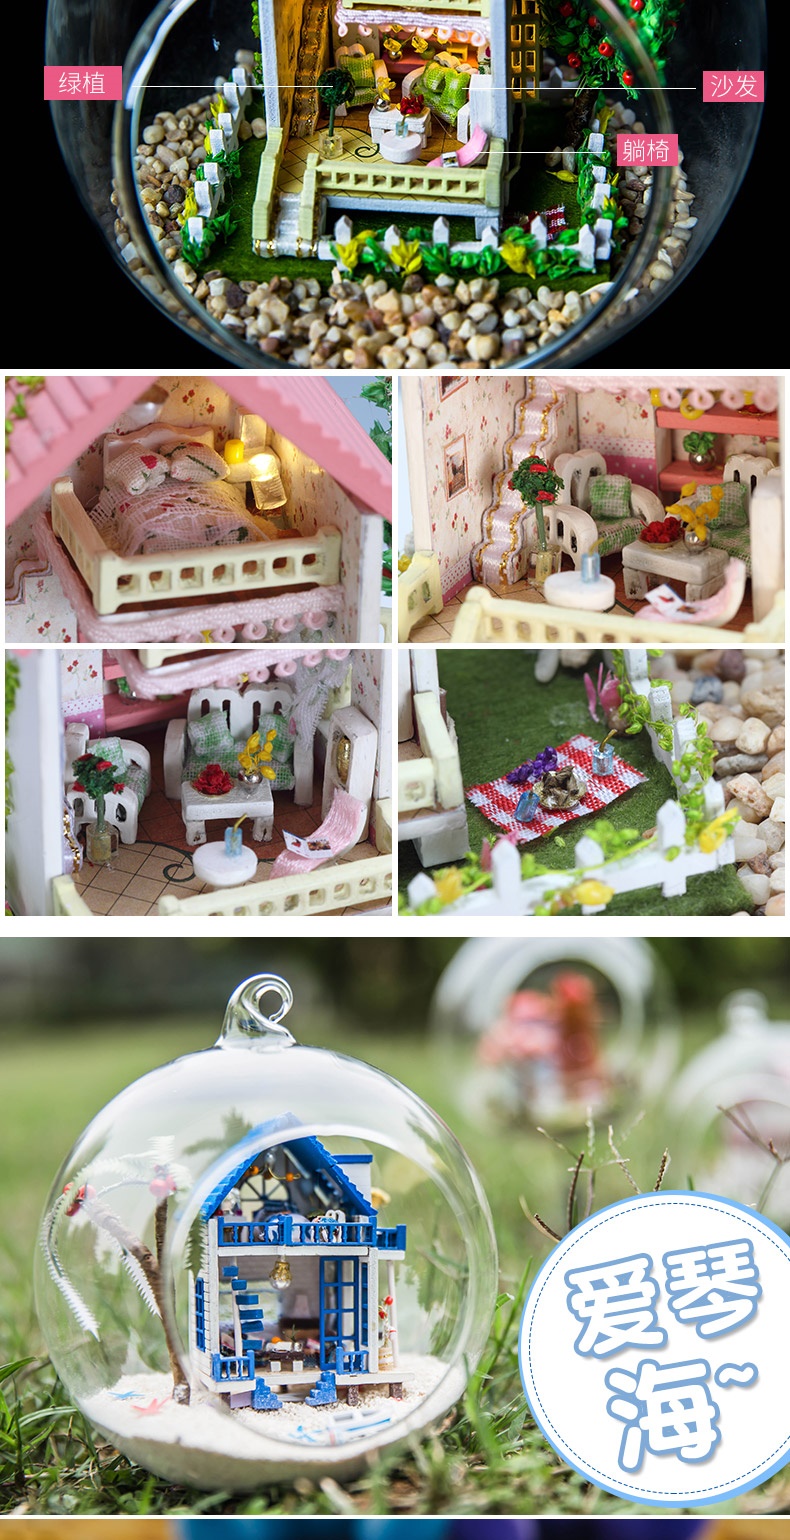 Fun Yiya tự làm túp lều làm bằng tay quả bóng thủy tinh mô hình ngôi nhà nhỏ lắp ráp đồ chơi món quà sinh nhật sáng tạo - Chế độ tĩnh